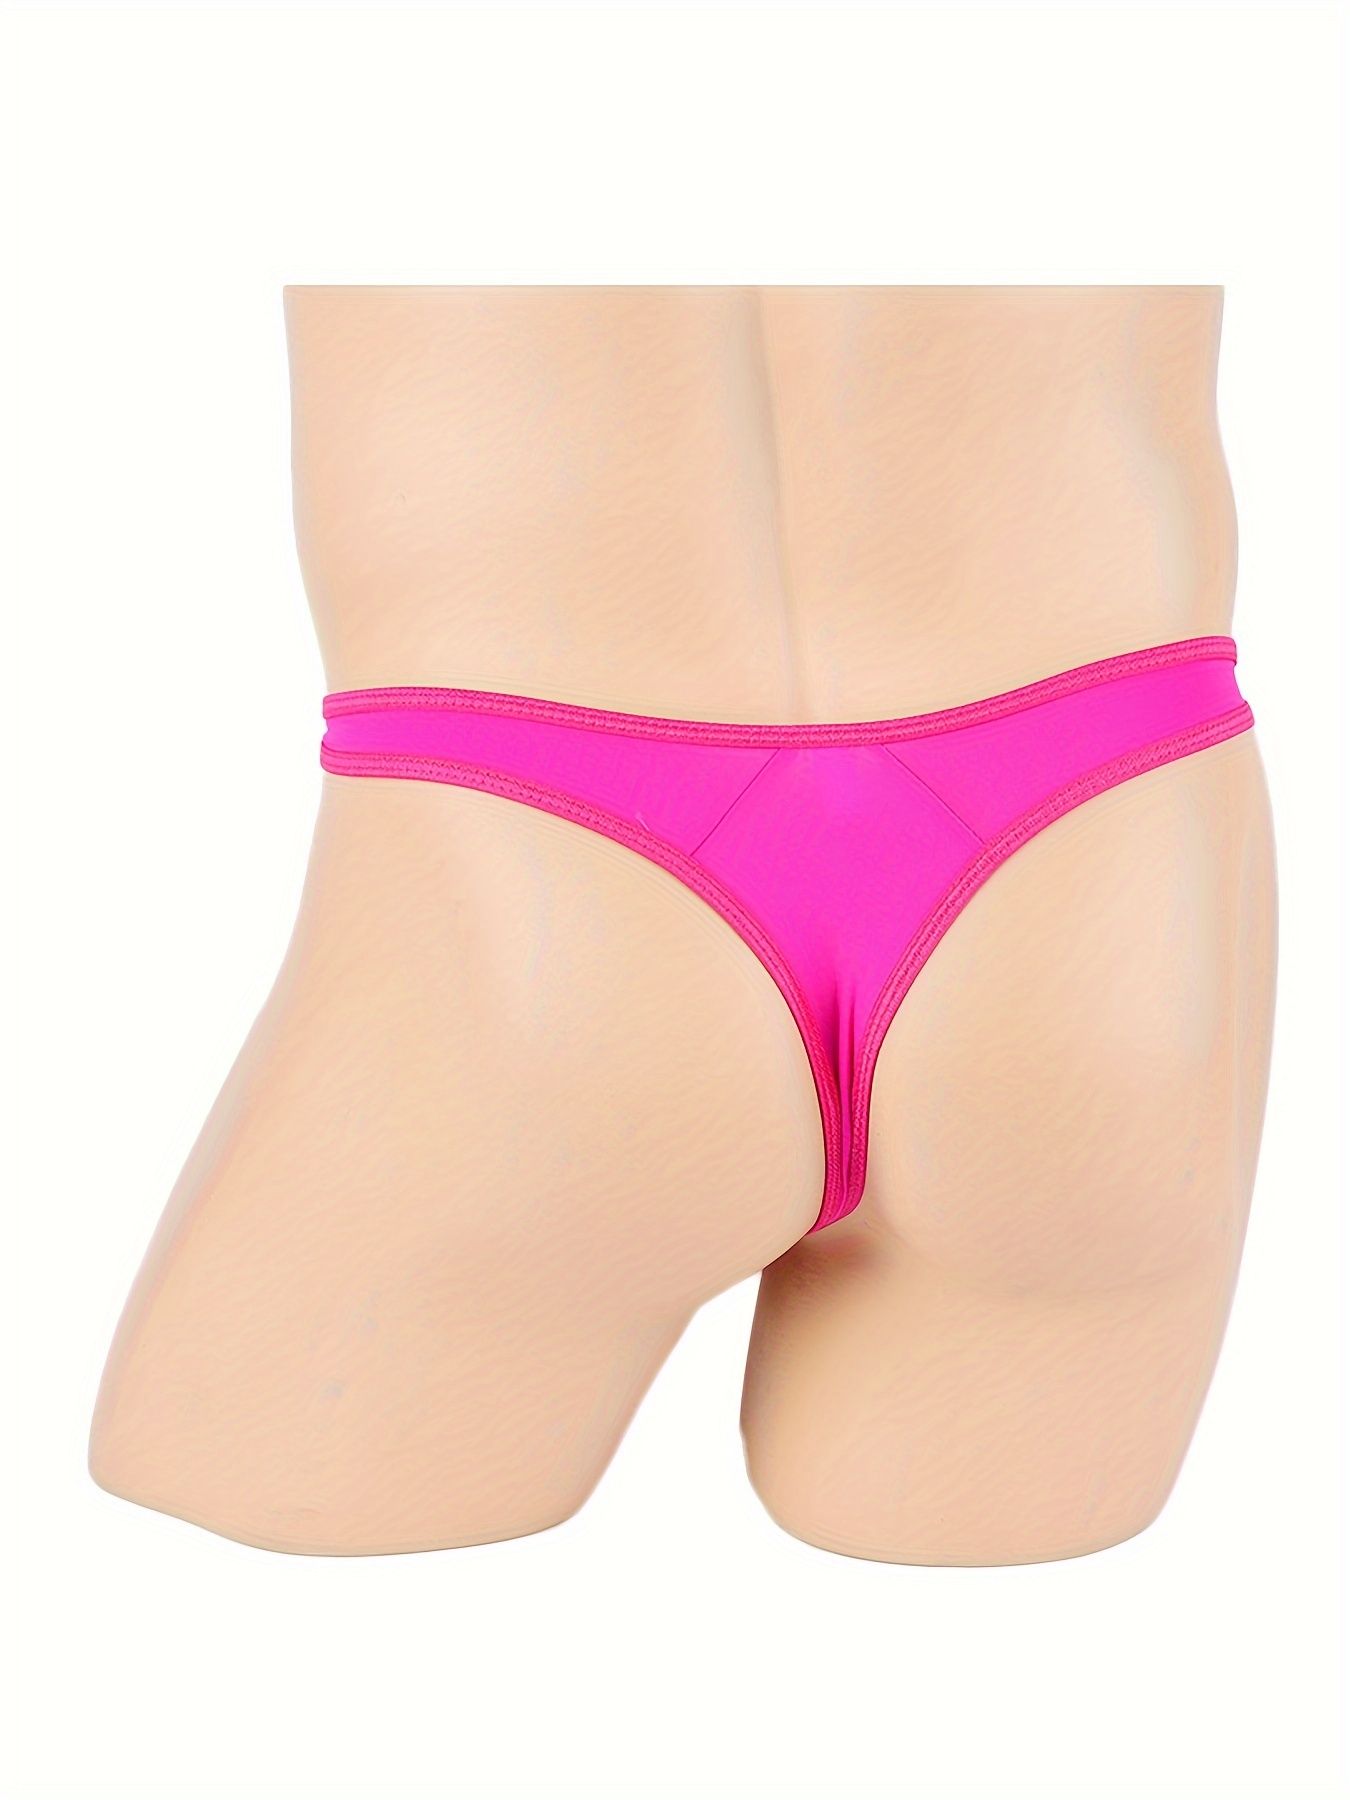 Mens Lingerie See Through Mesh Bulge Pouch Bikini G-String Thong